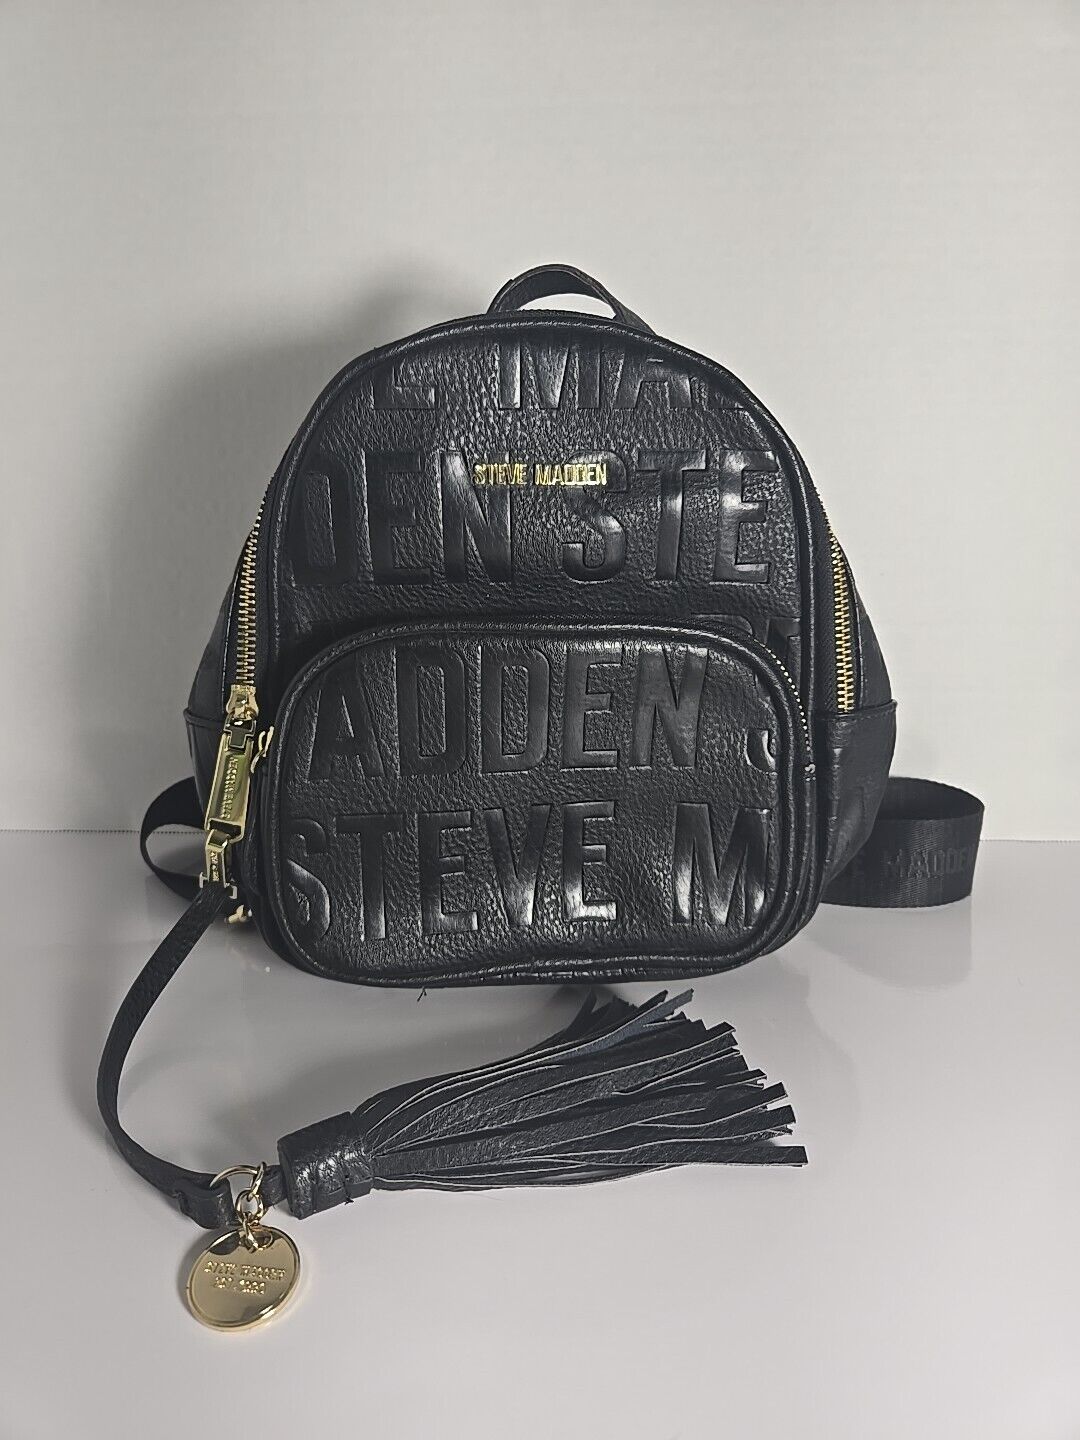 Steve Madden Mini Backpack Black Gold Logo Zippers Tassel Charm